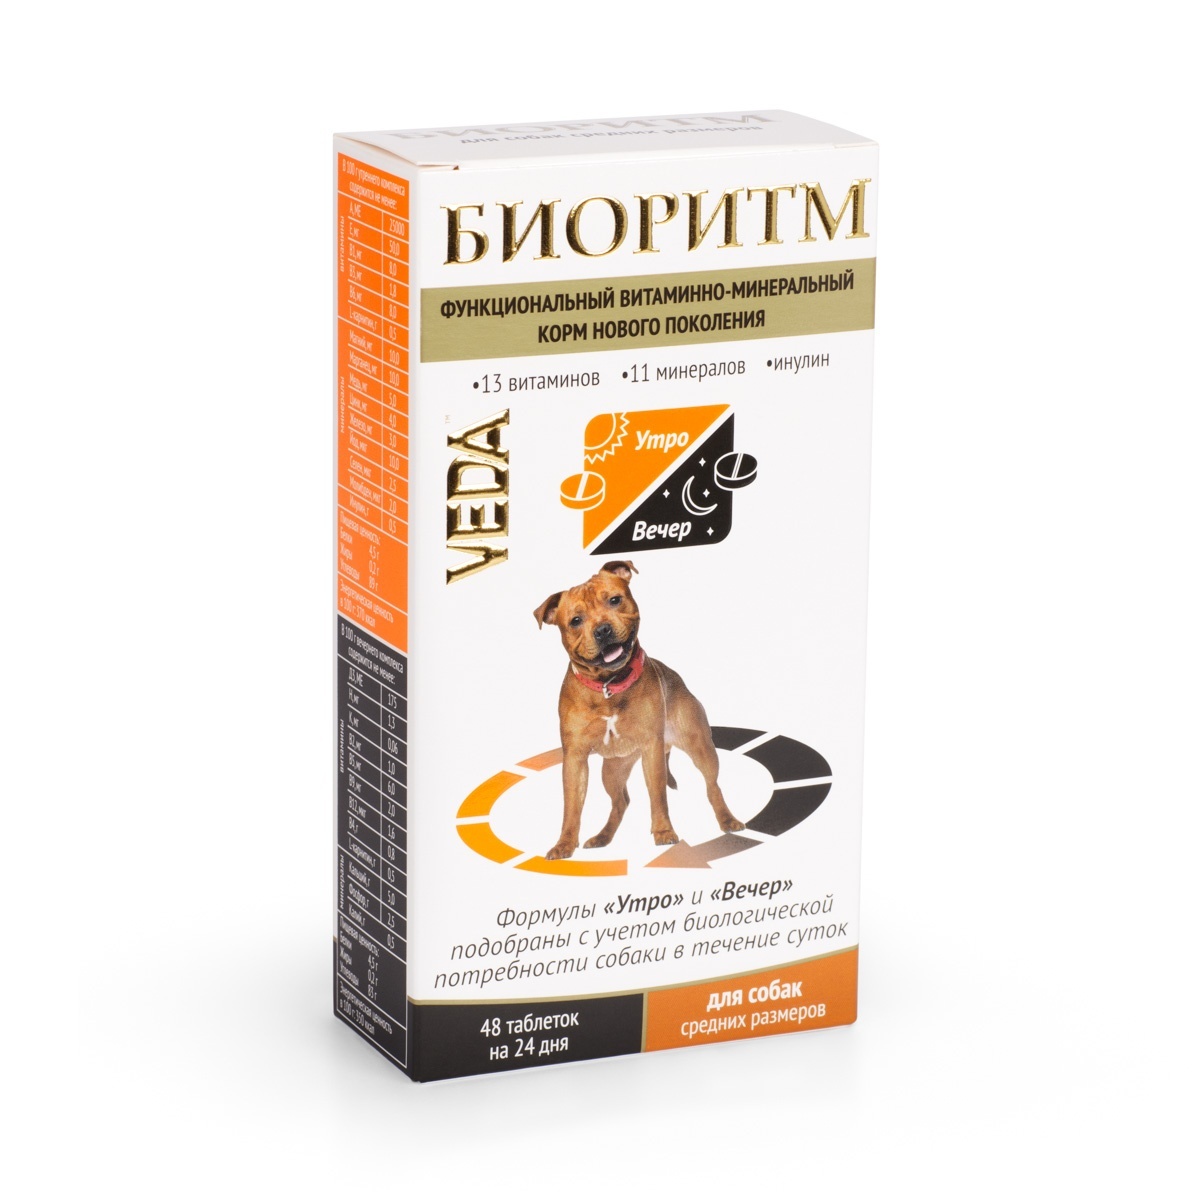 Веда Веда биоритм витамины для собак средних пород (20 г) веда веда шоколад молочный для собак 15 г